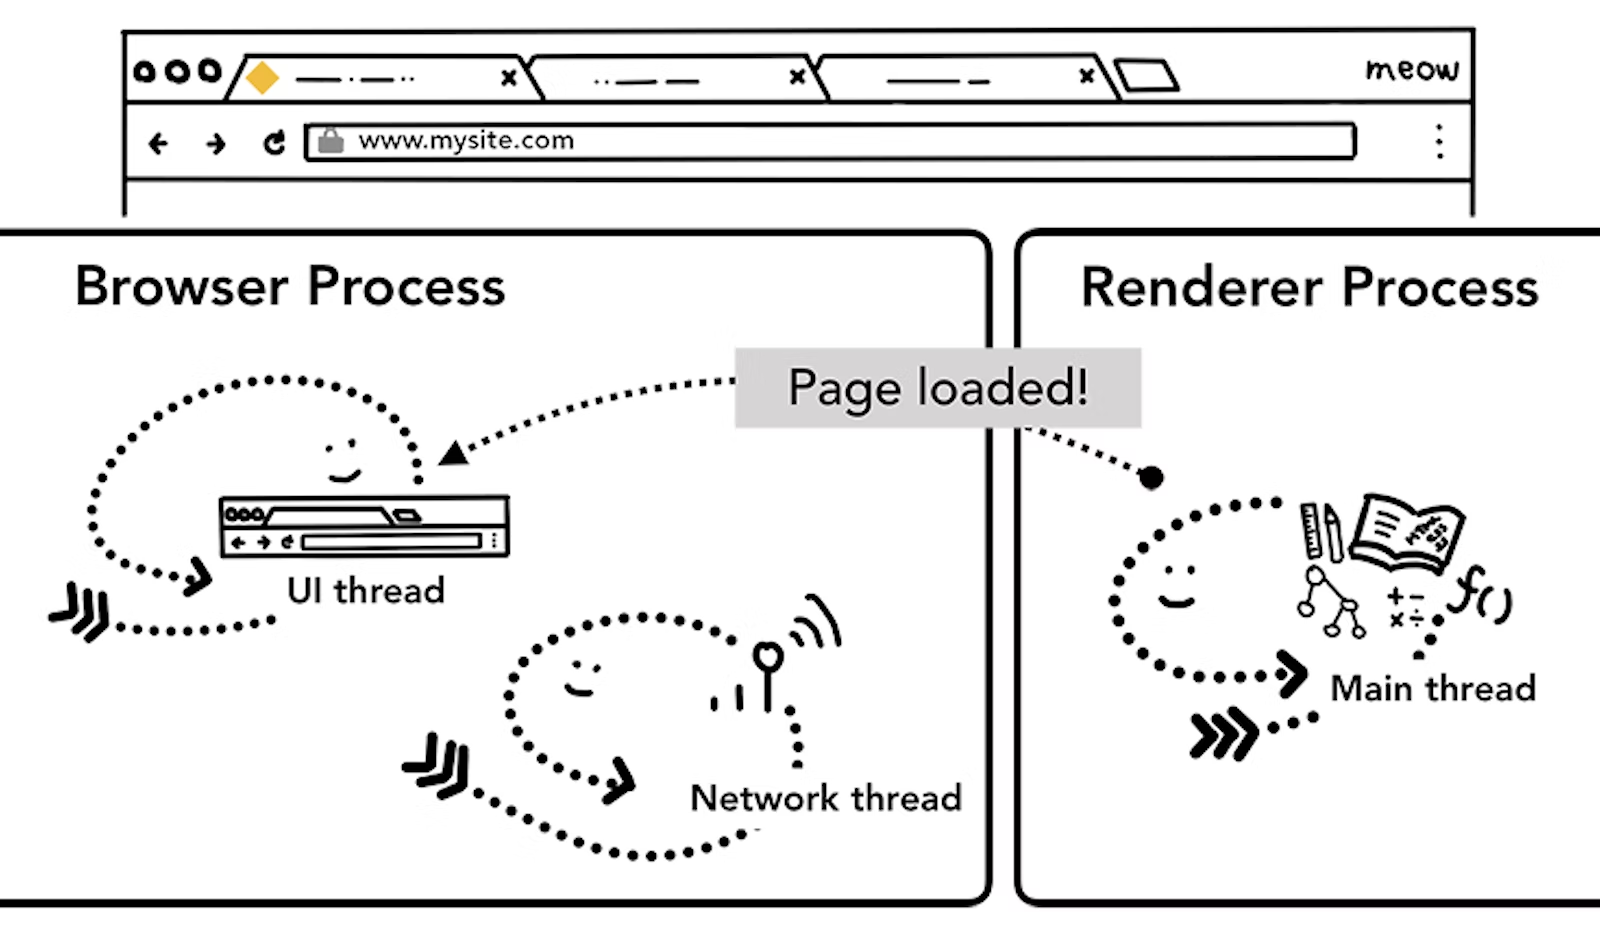 그림 7. 렌더러 프로세스에서 브라우저 프로세스로 보내는 페이지 로딩 완료 IPC